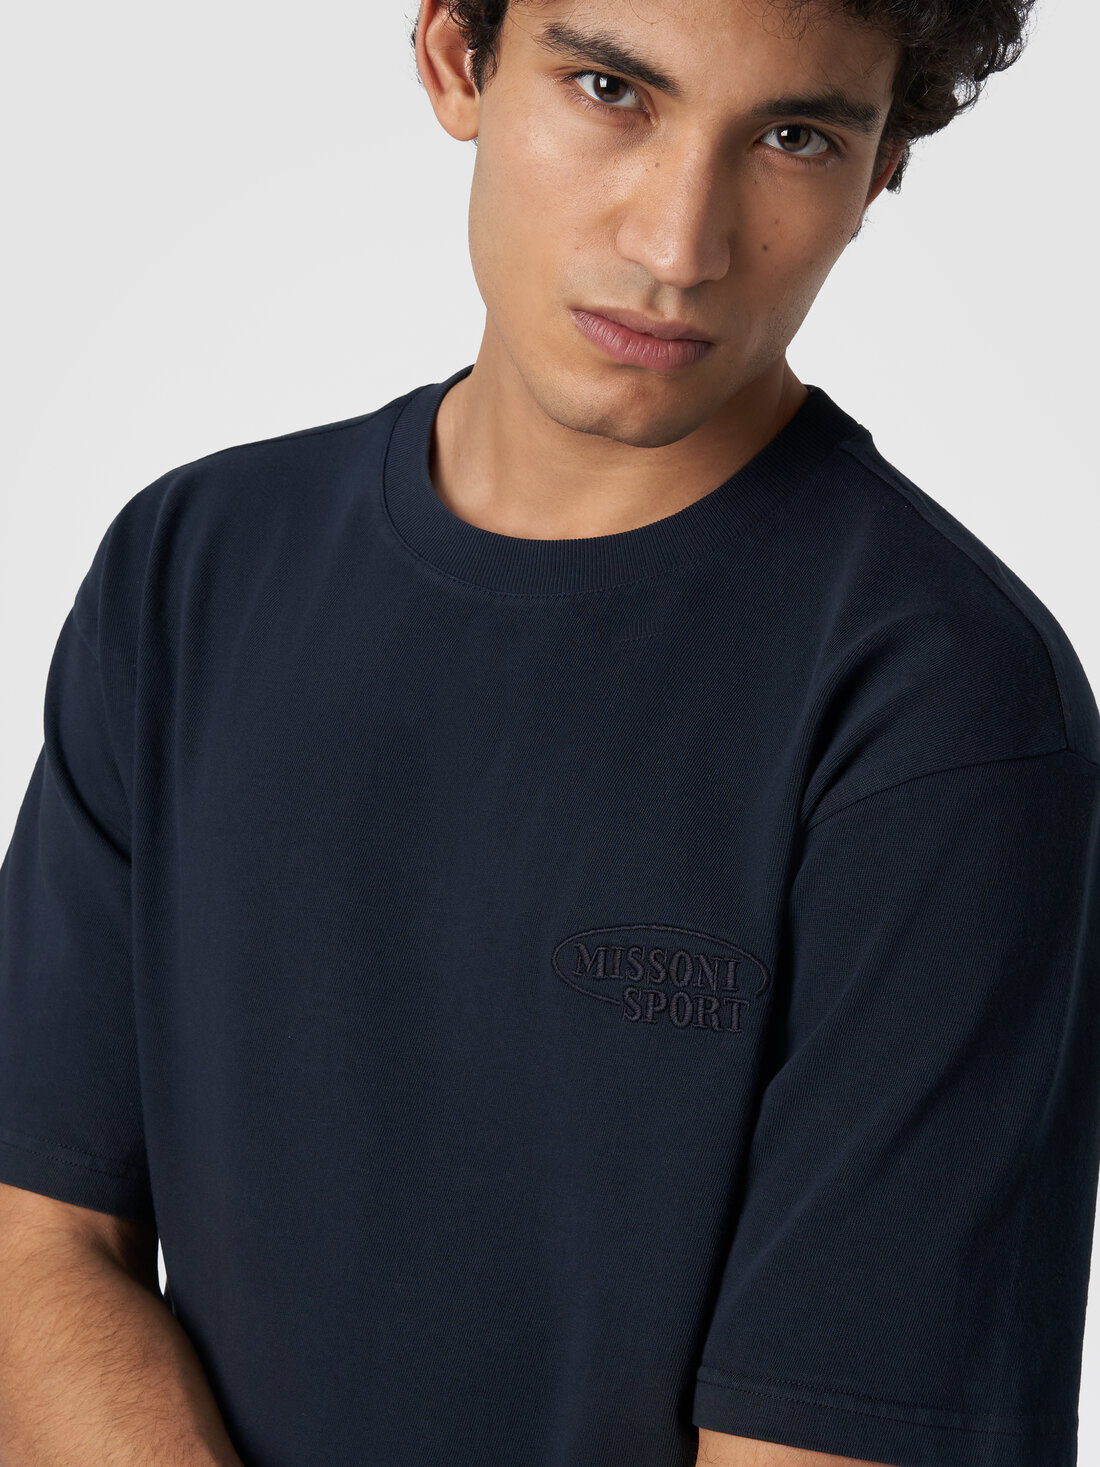 Baumwoll-T-Shirt mit Rundhalsausschnitt und Logo, Marineblau  - TS24SL00BJ00GYS72EU - 4